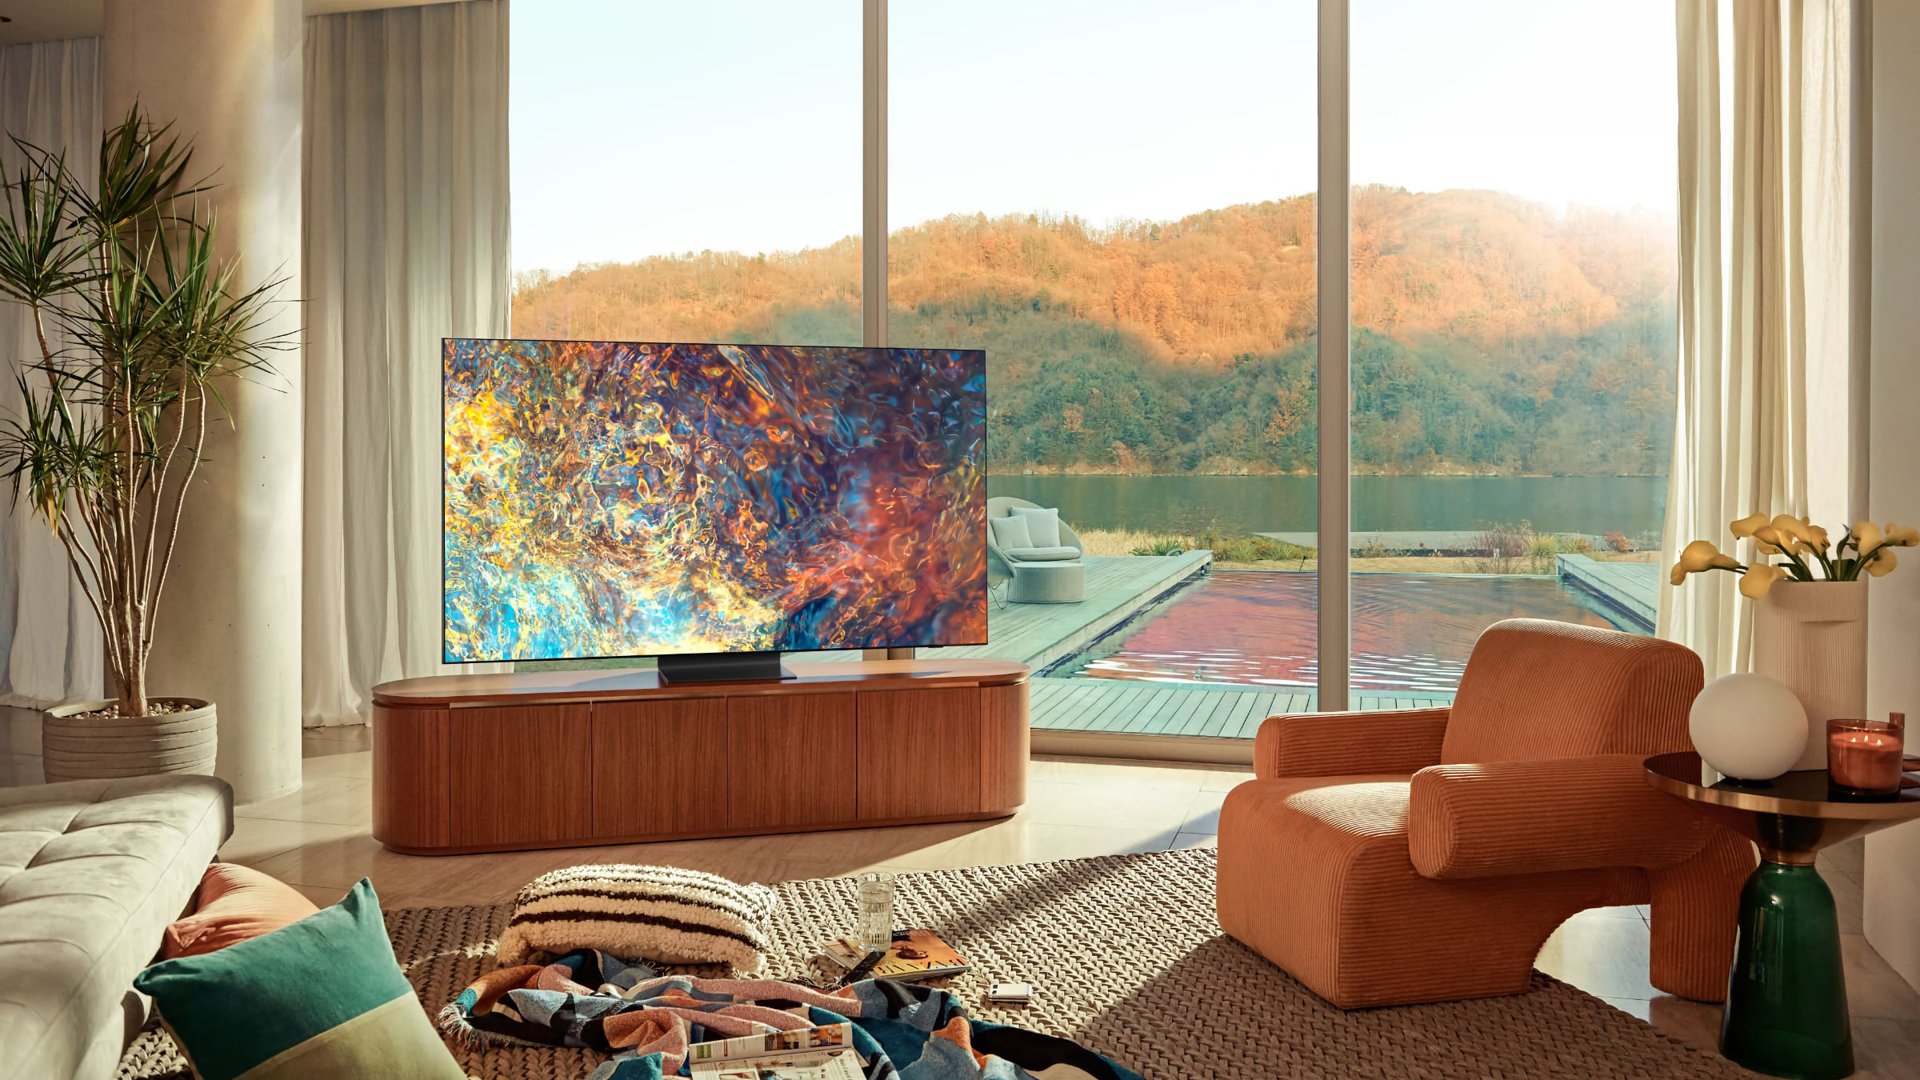 Jeden z mini telewizorów LED firmy Samsung w jasnym salonie z kolorowym abstrakcyjnym obrazem na ekranie.